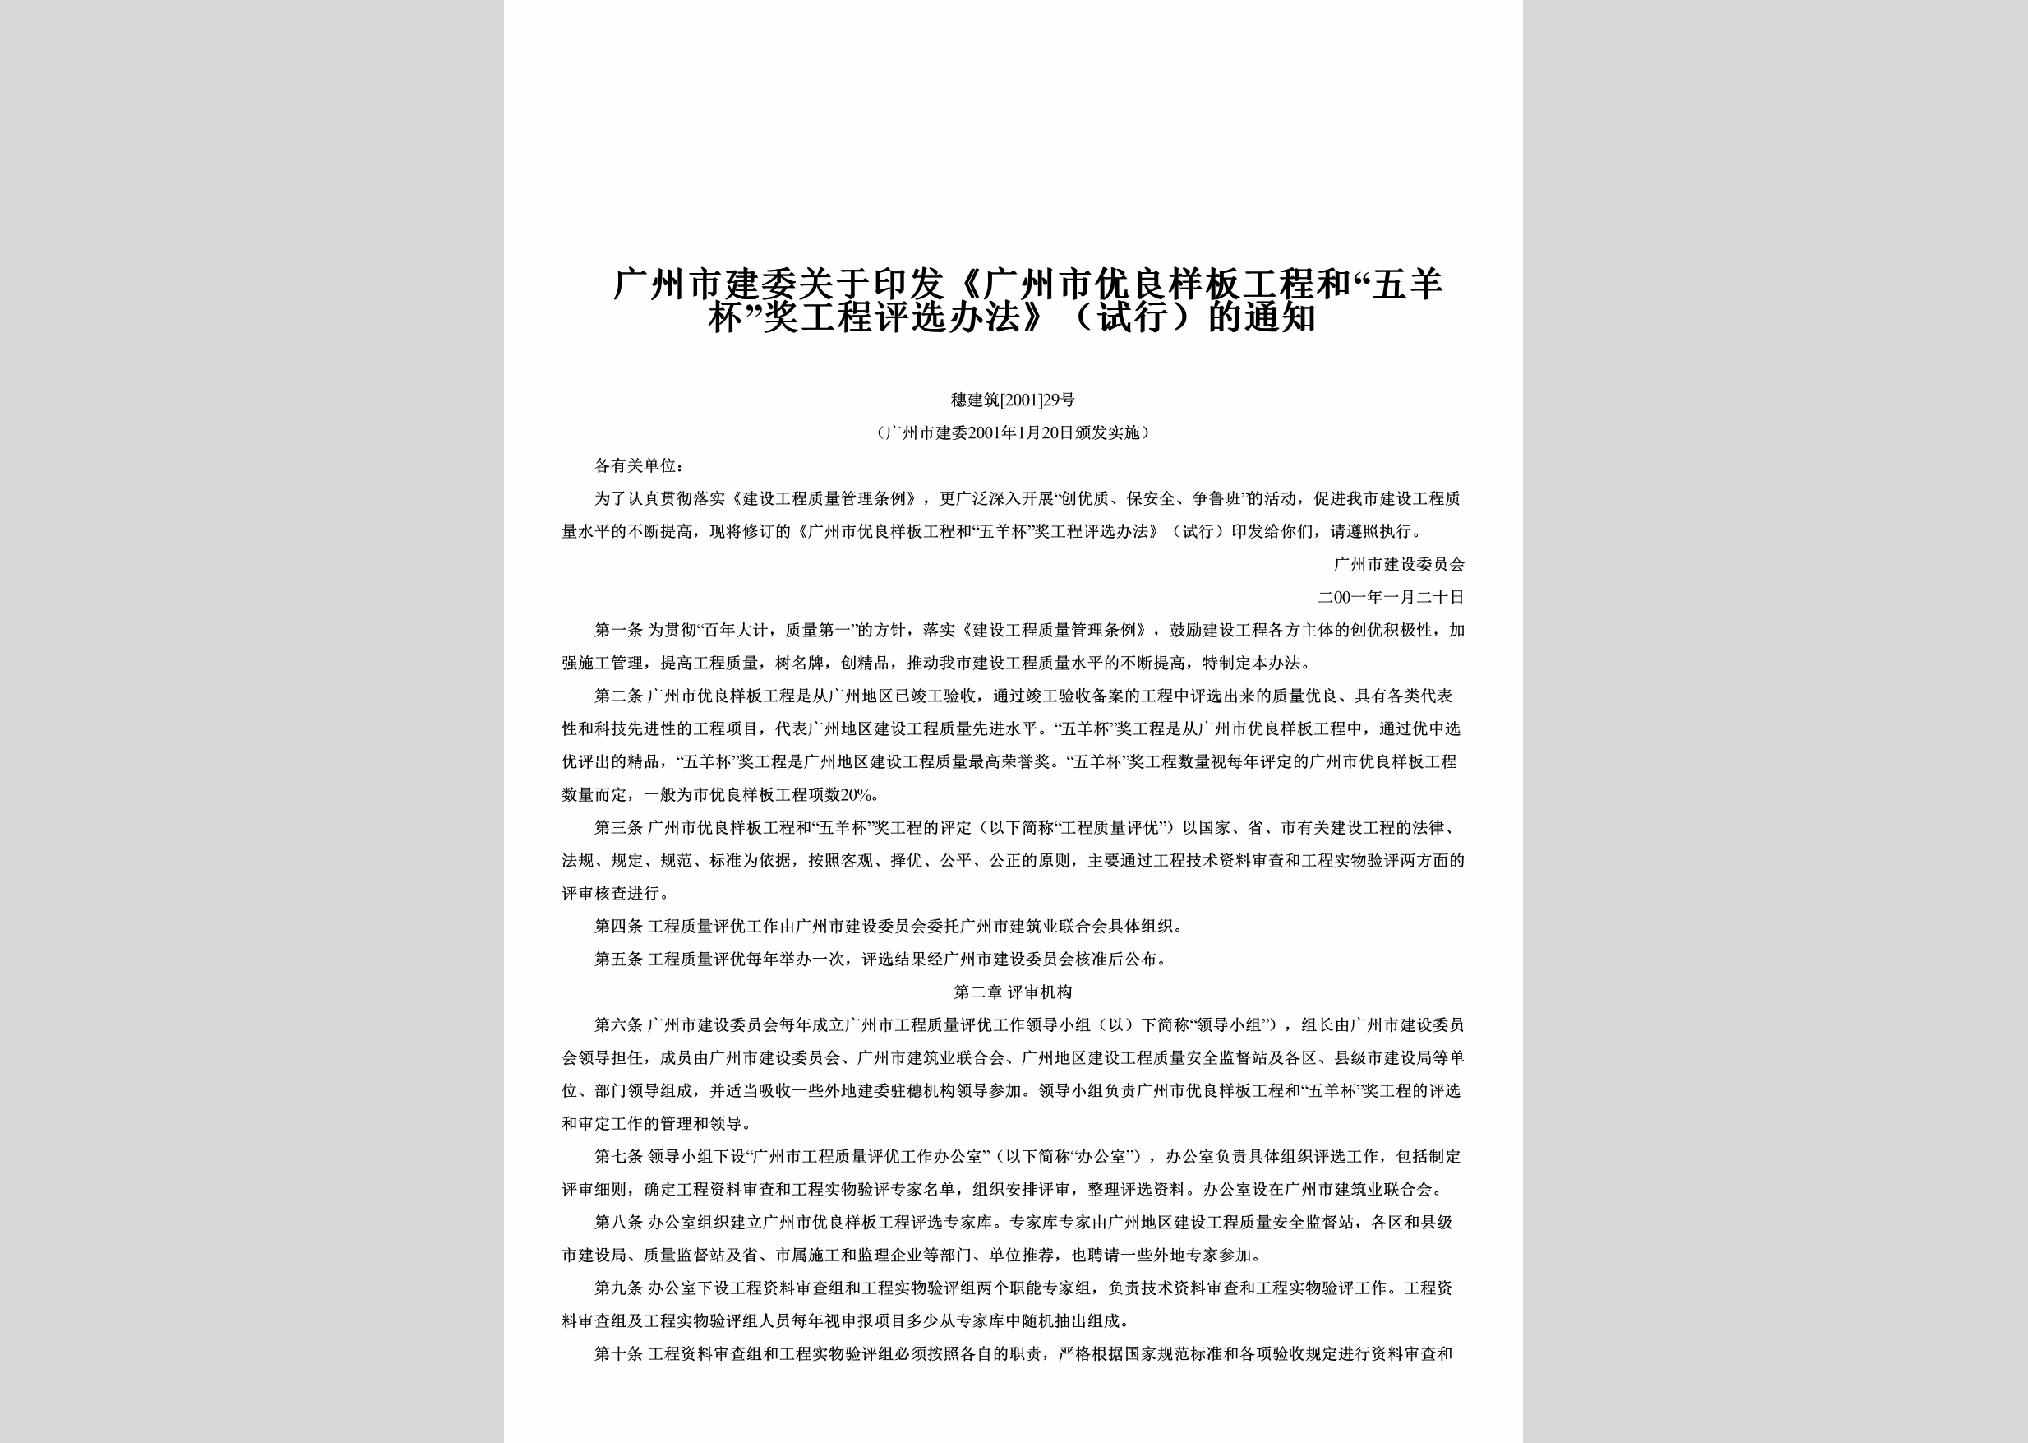 穗建筑[2001]29号：关于印发《广州市优良样板工程和“五羊杯”奖工程评选办法》（试行）的通知